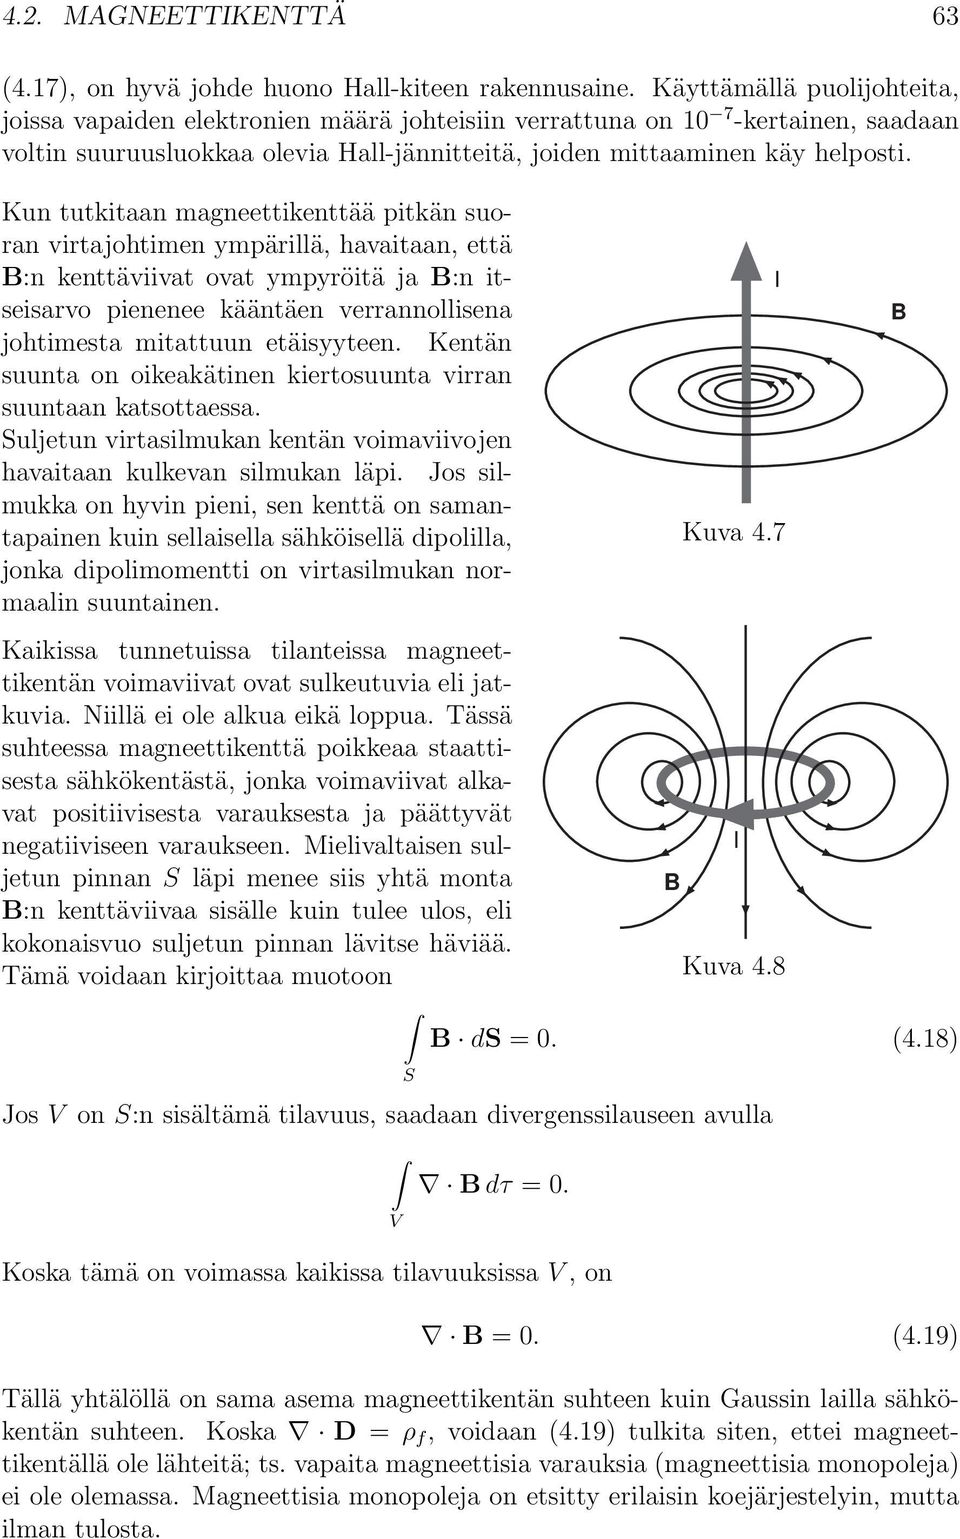 Kun tutkitaan magneettikenttää pitkän suoran virtajohtimen ympärillä, havaitaan, että :n kenttäviivat ovat ympyröitä ja:n itseisarvo pienenee kääntäen verrannollisena johtimesta mitattuun etäisyyteen.